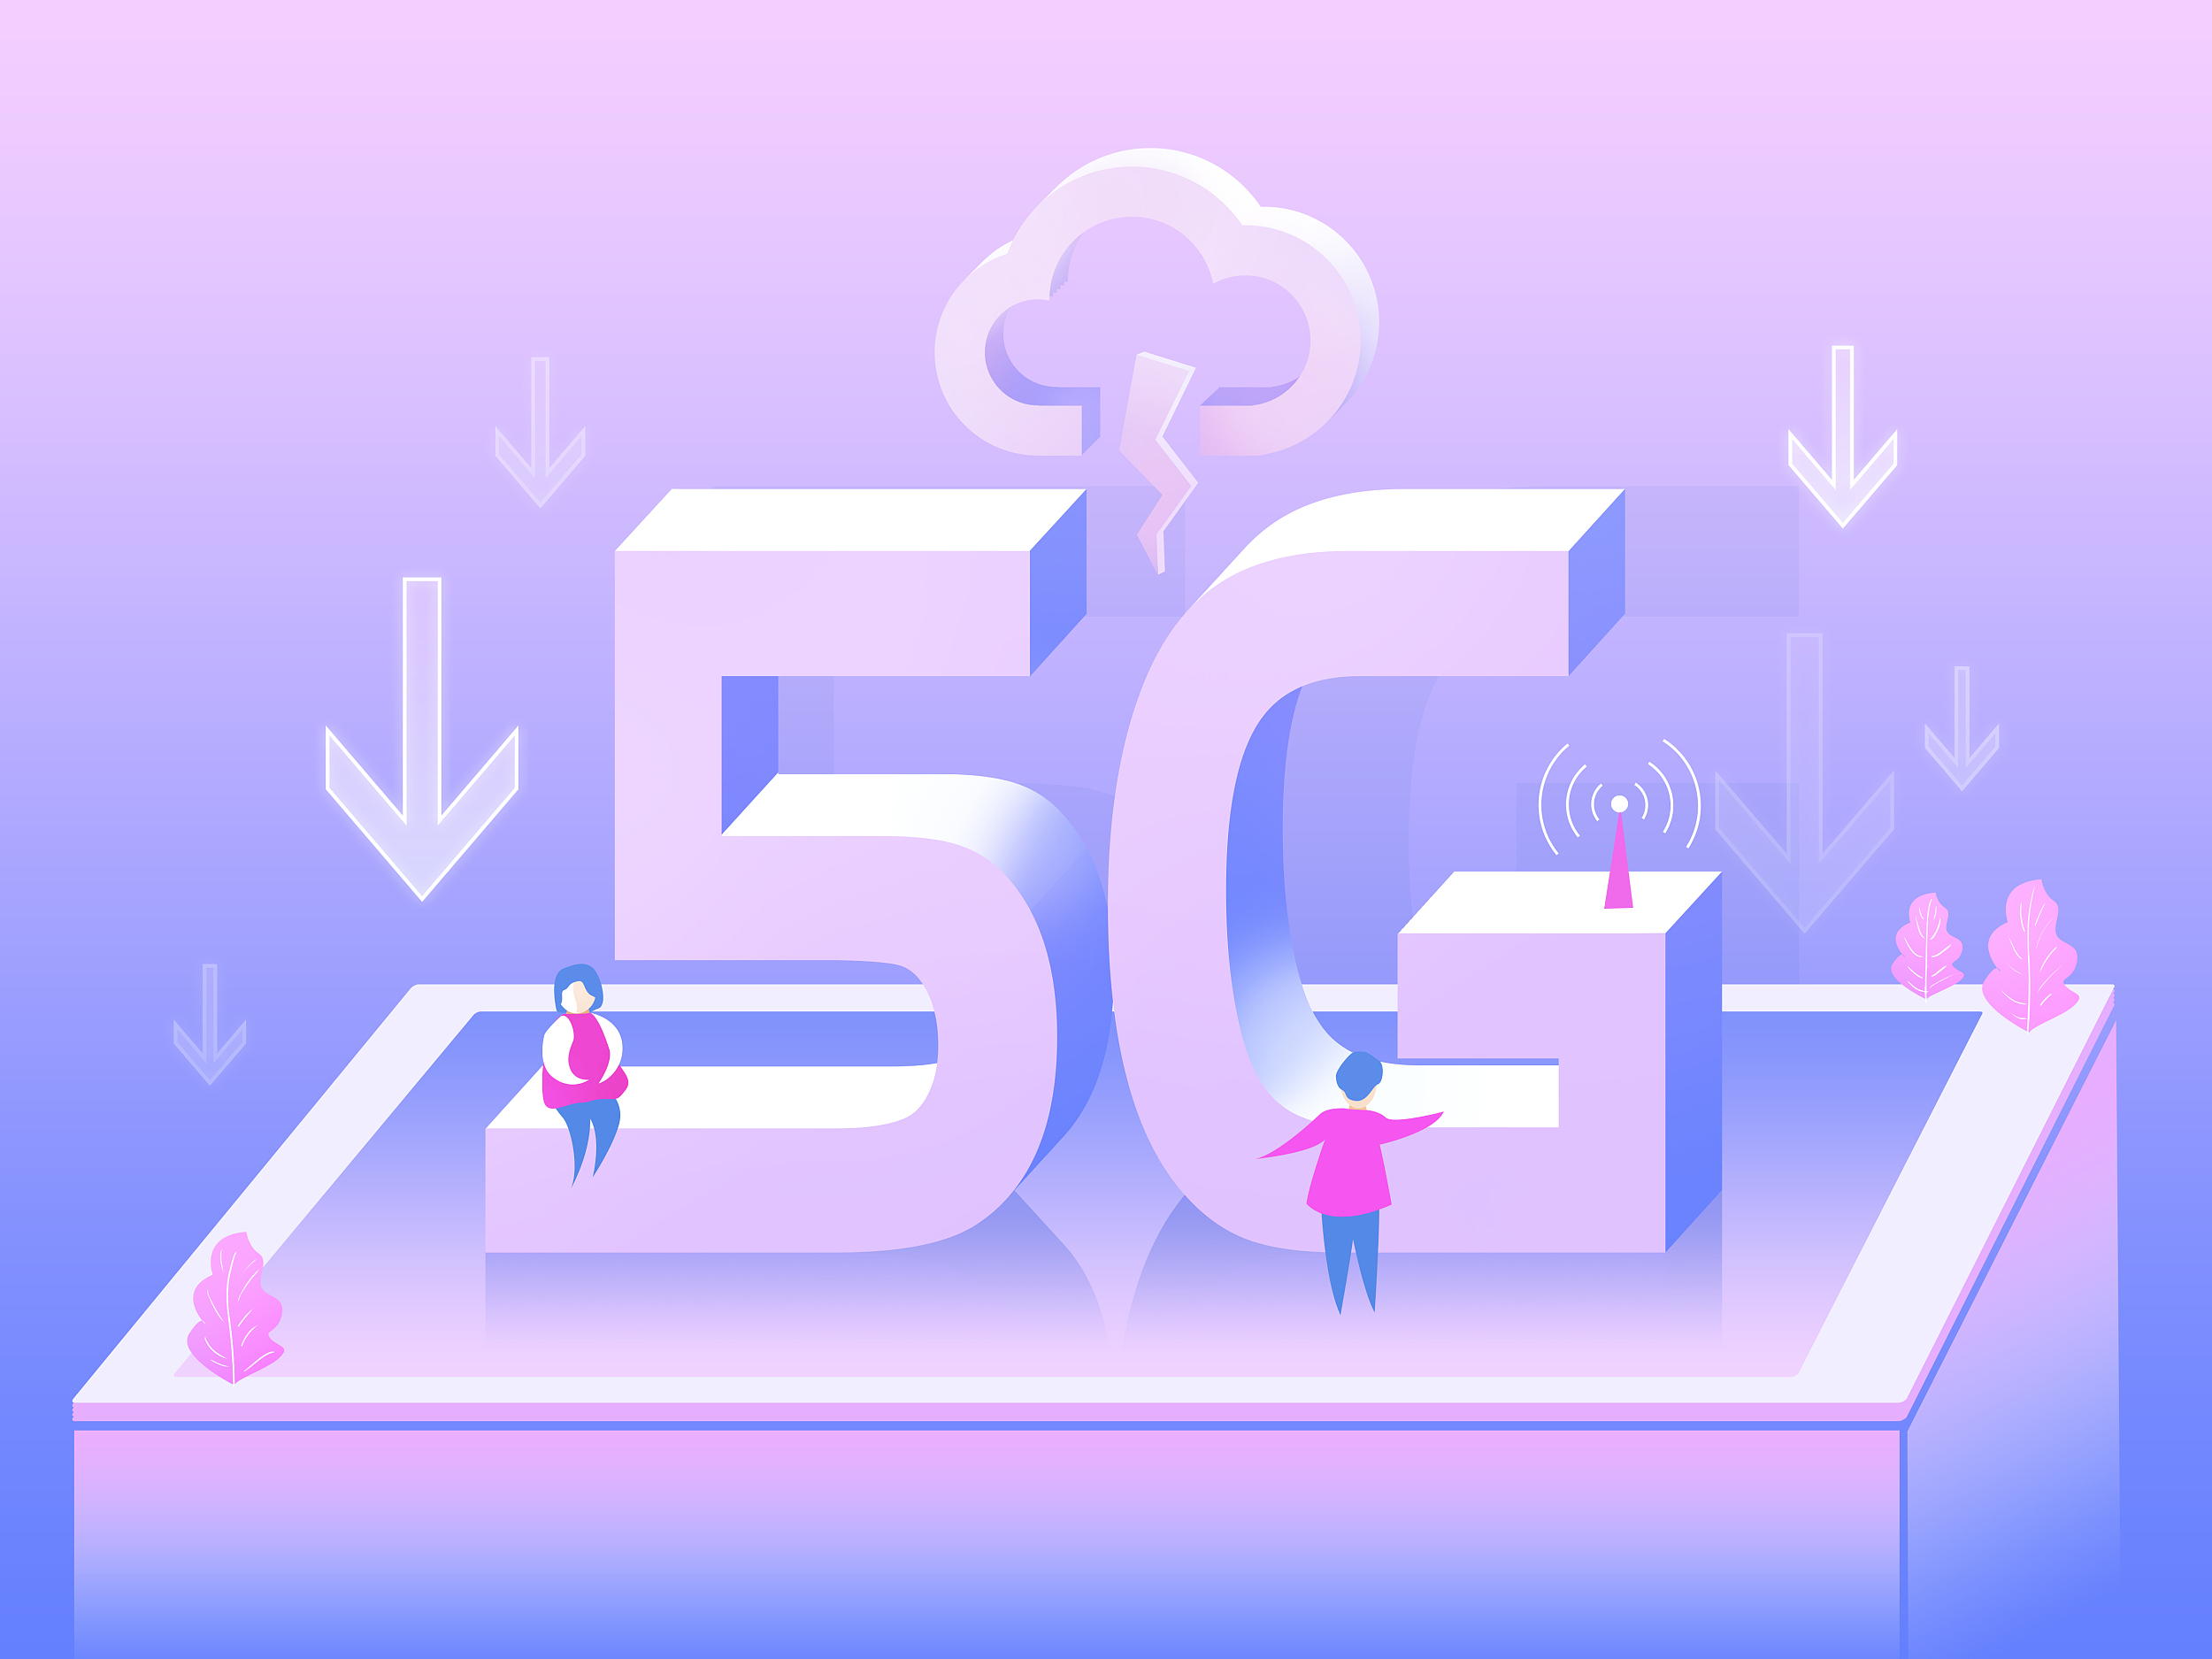 5G 智能手机：不仅是网速提升，更是生活方式的重大变革  第4张